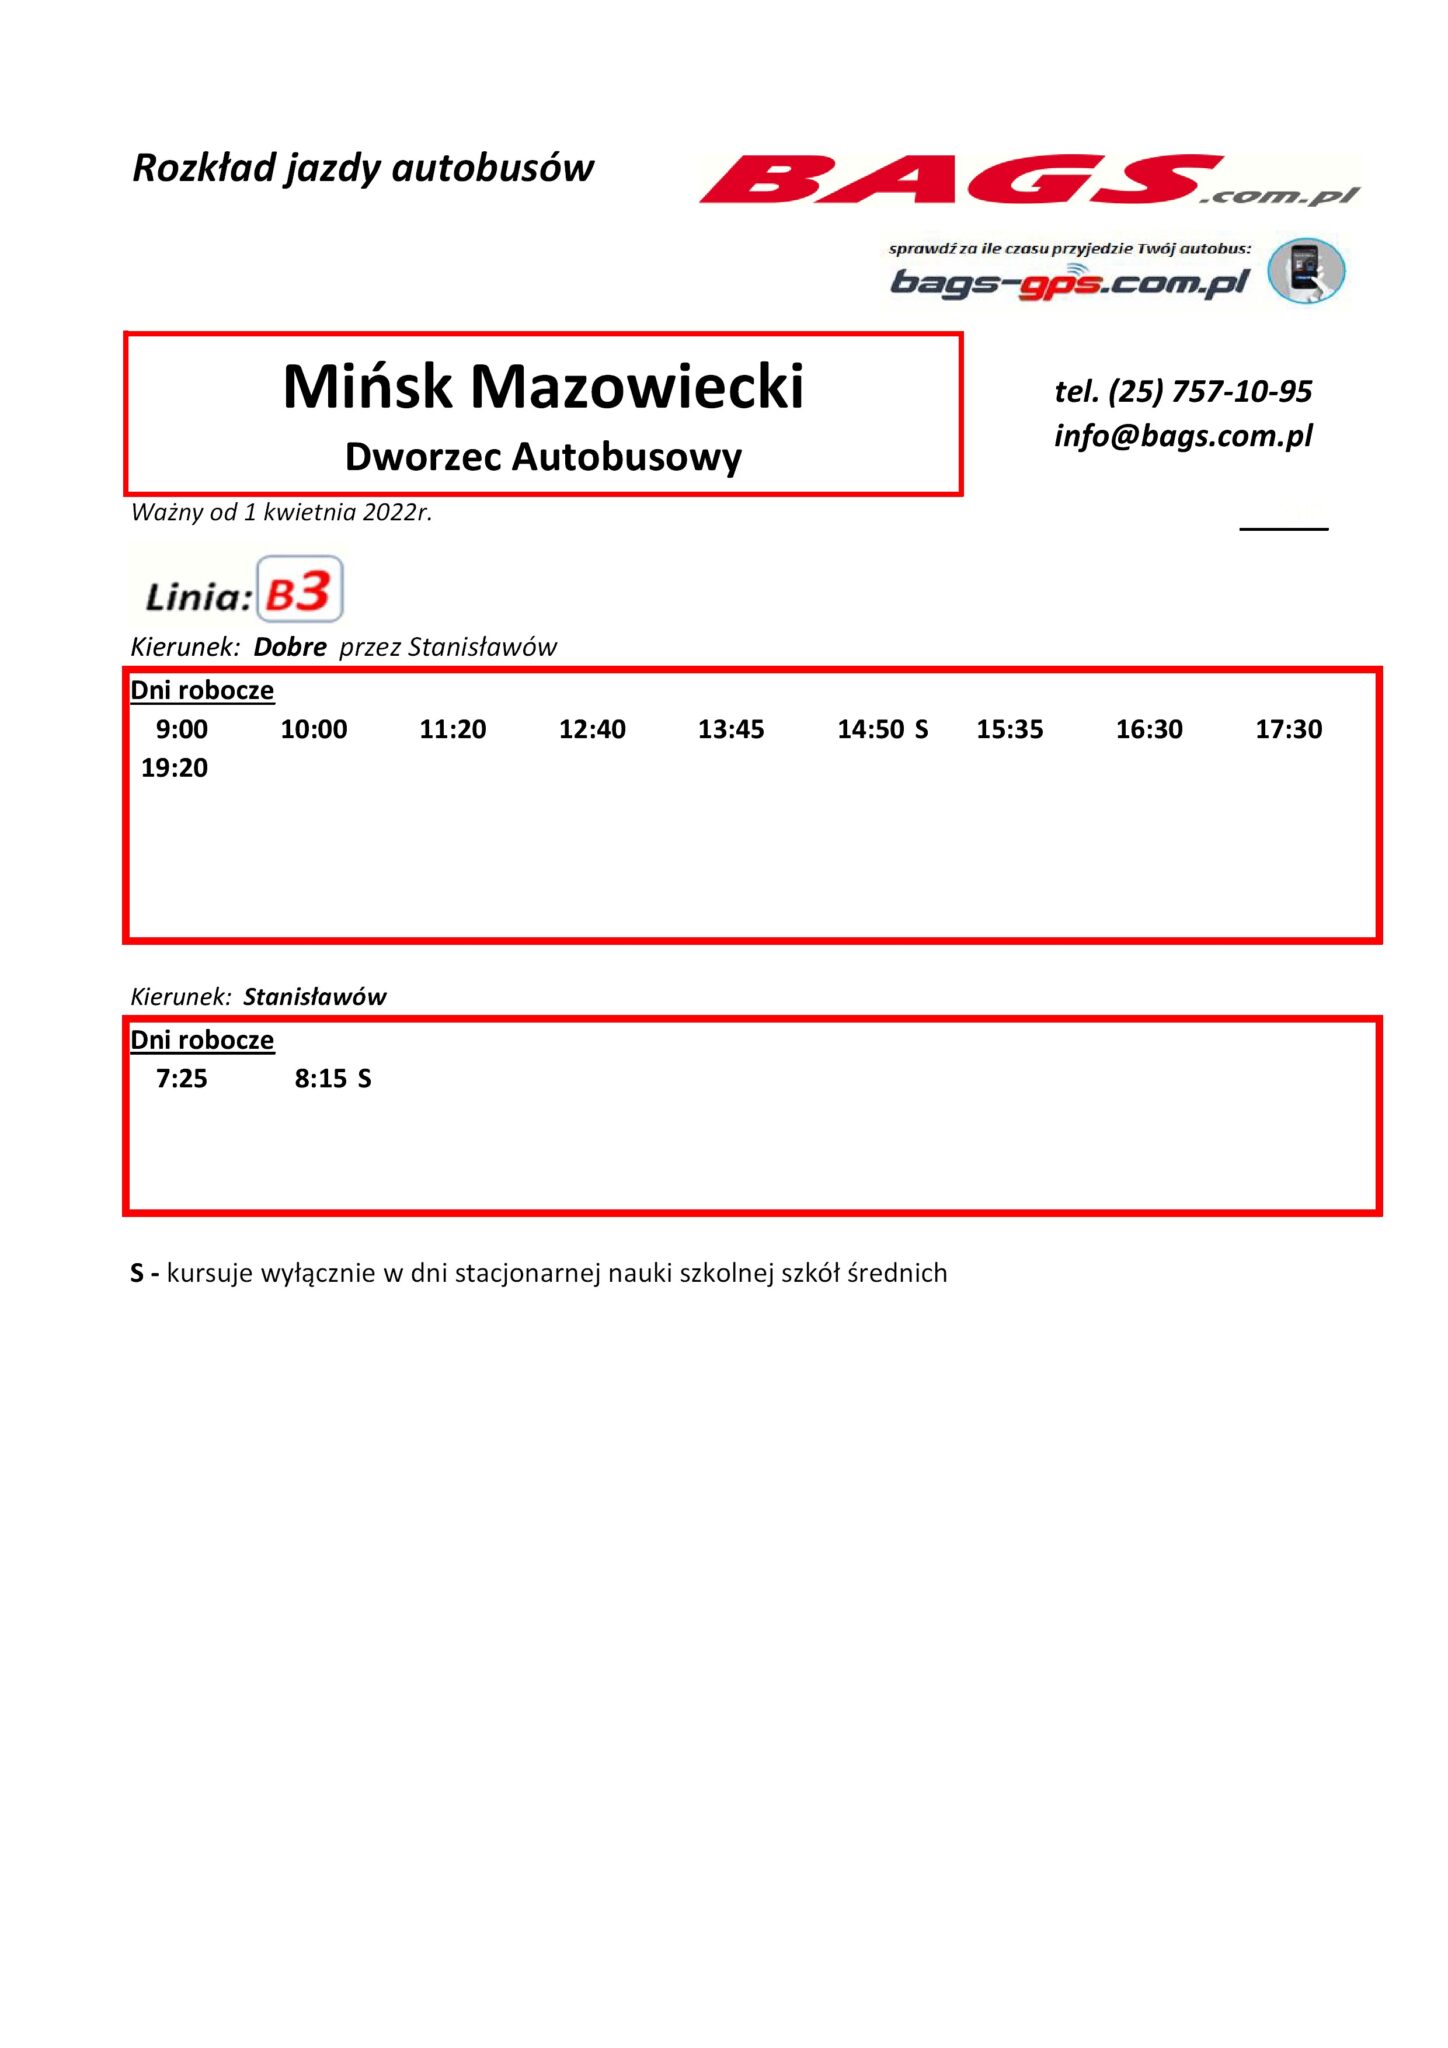 Minsk-Maz.-Dworzec-Autobusowy-1-2-1448x2048